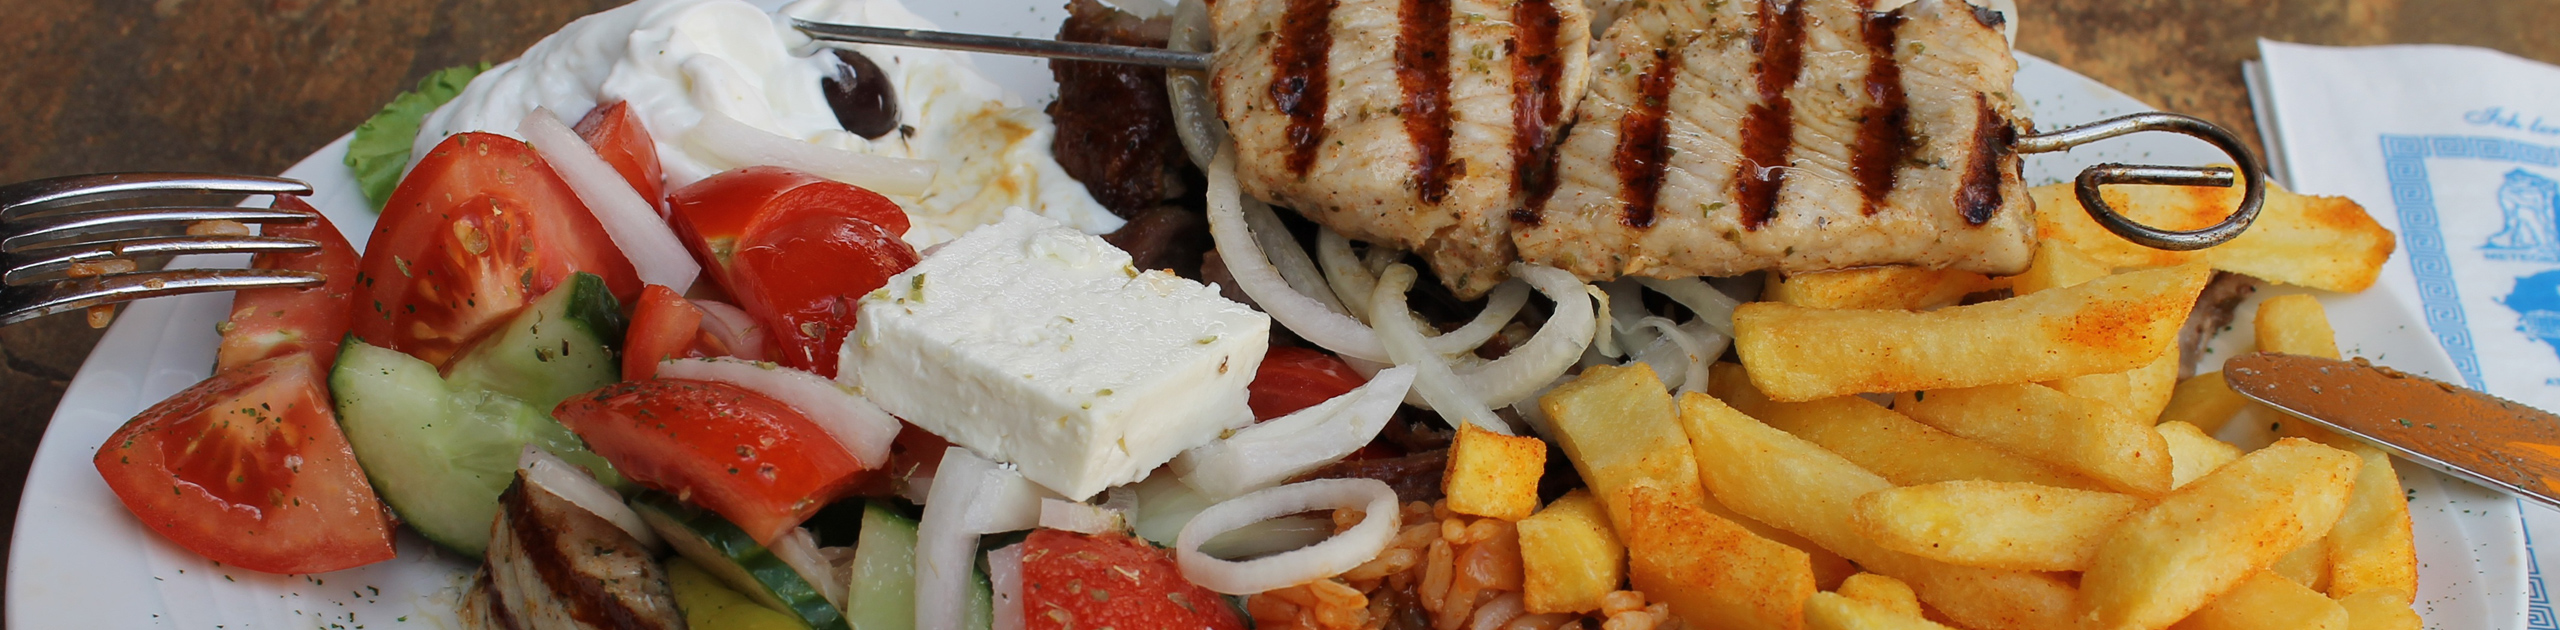 Griechischer Salat, Reis, Pommes frites und Souvlaki